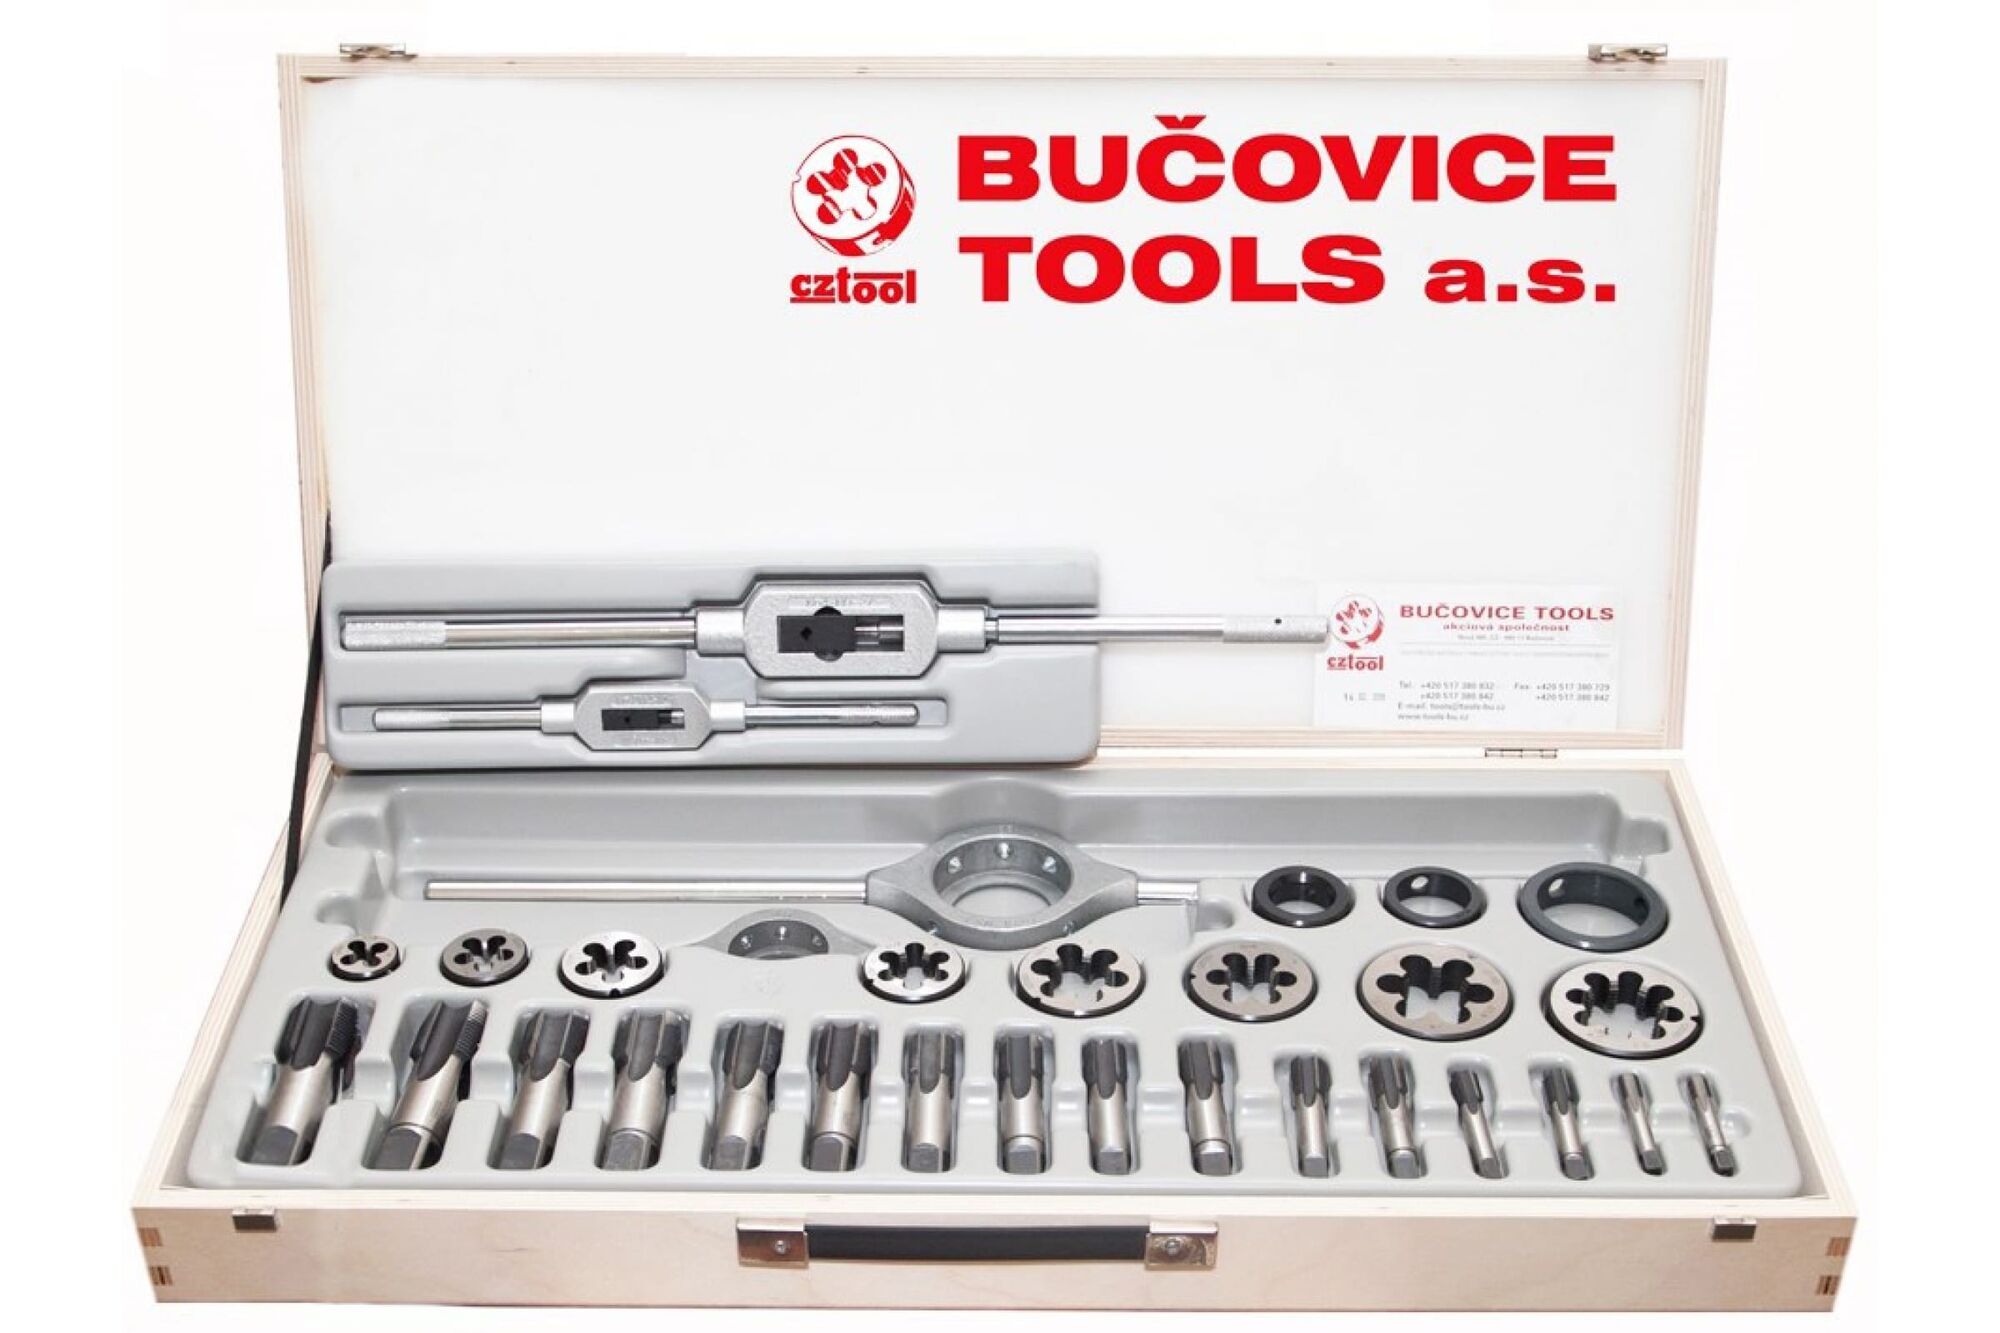 Bucovice tools. Набор метчиков 2 шт. Bucovice Tools м 4 x 0,5 мм 115crv3 110041. Bucovice Tools 312100. Метчик ручной g1/4 Bucovice Tools. Плашка Трубная цилиндрическая g 1/4'' Bucovice Tools 242140.